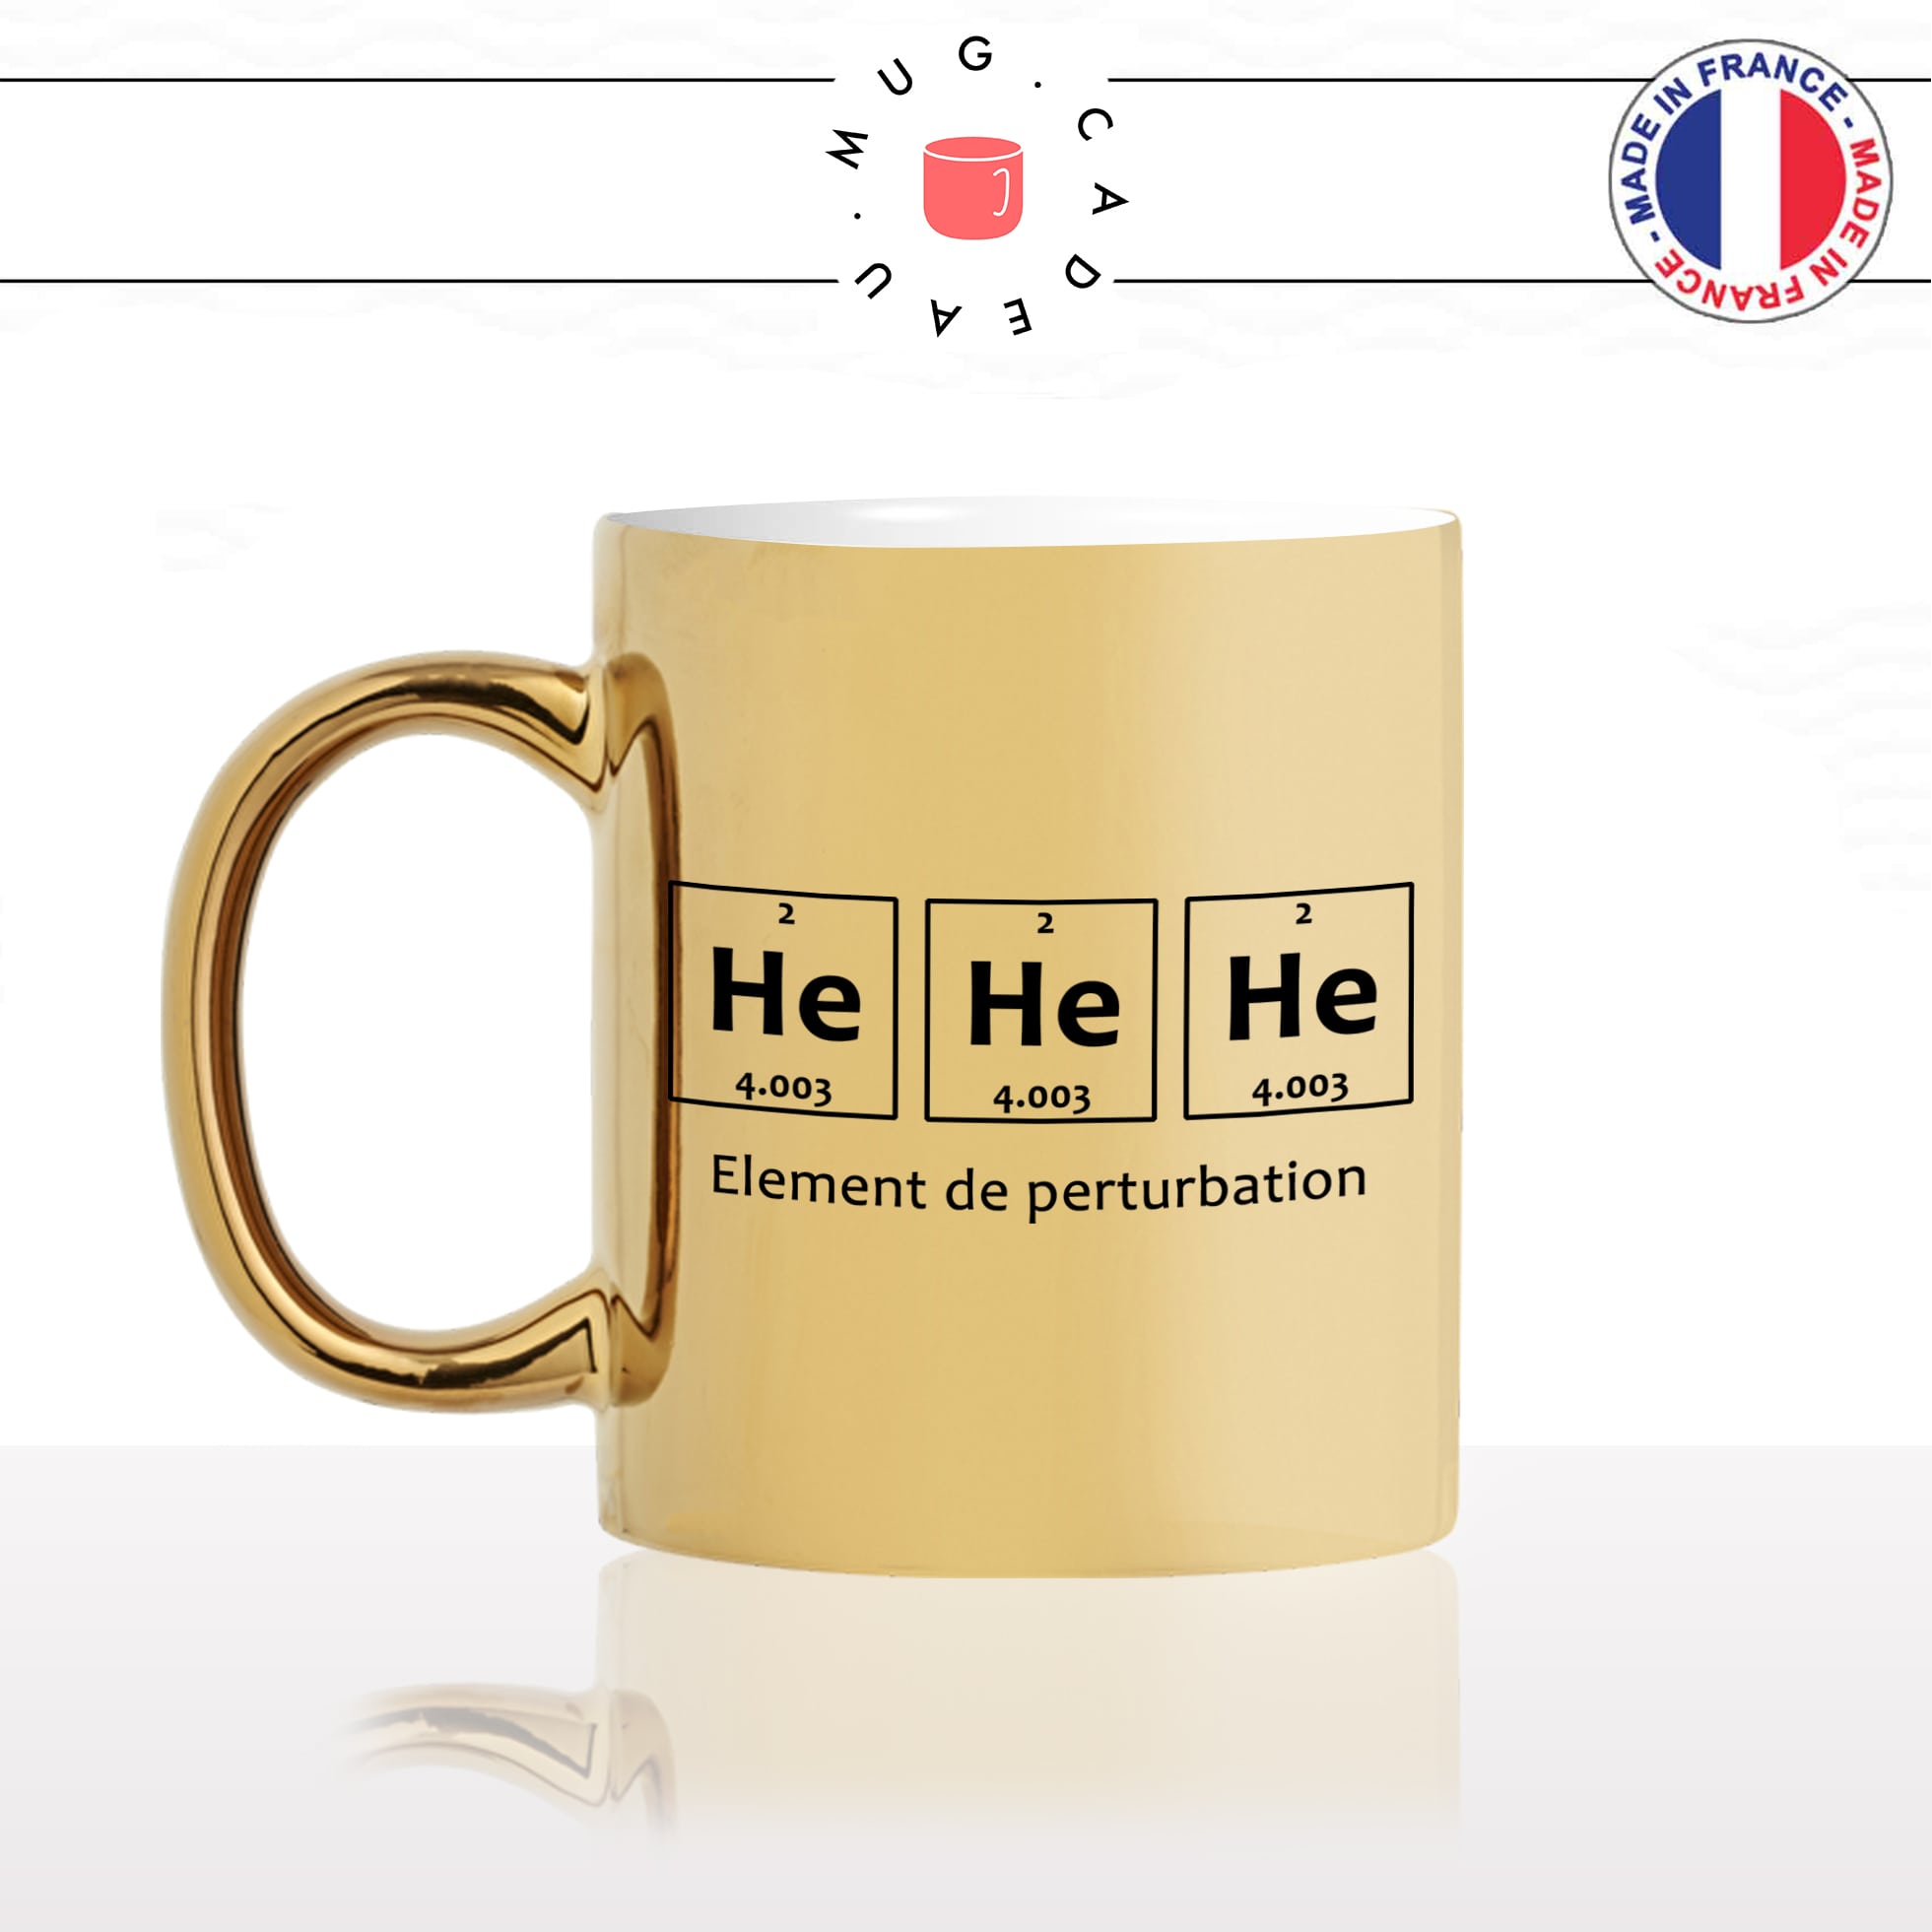 mug-tasse-or-gold-doré-geek-hehehe-he-élément-perturbation-science-drole-pc-ordi-gamer-gaming-humour-idée-cadeau-personnalisé-café-thé-min